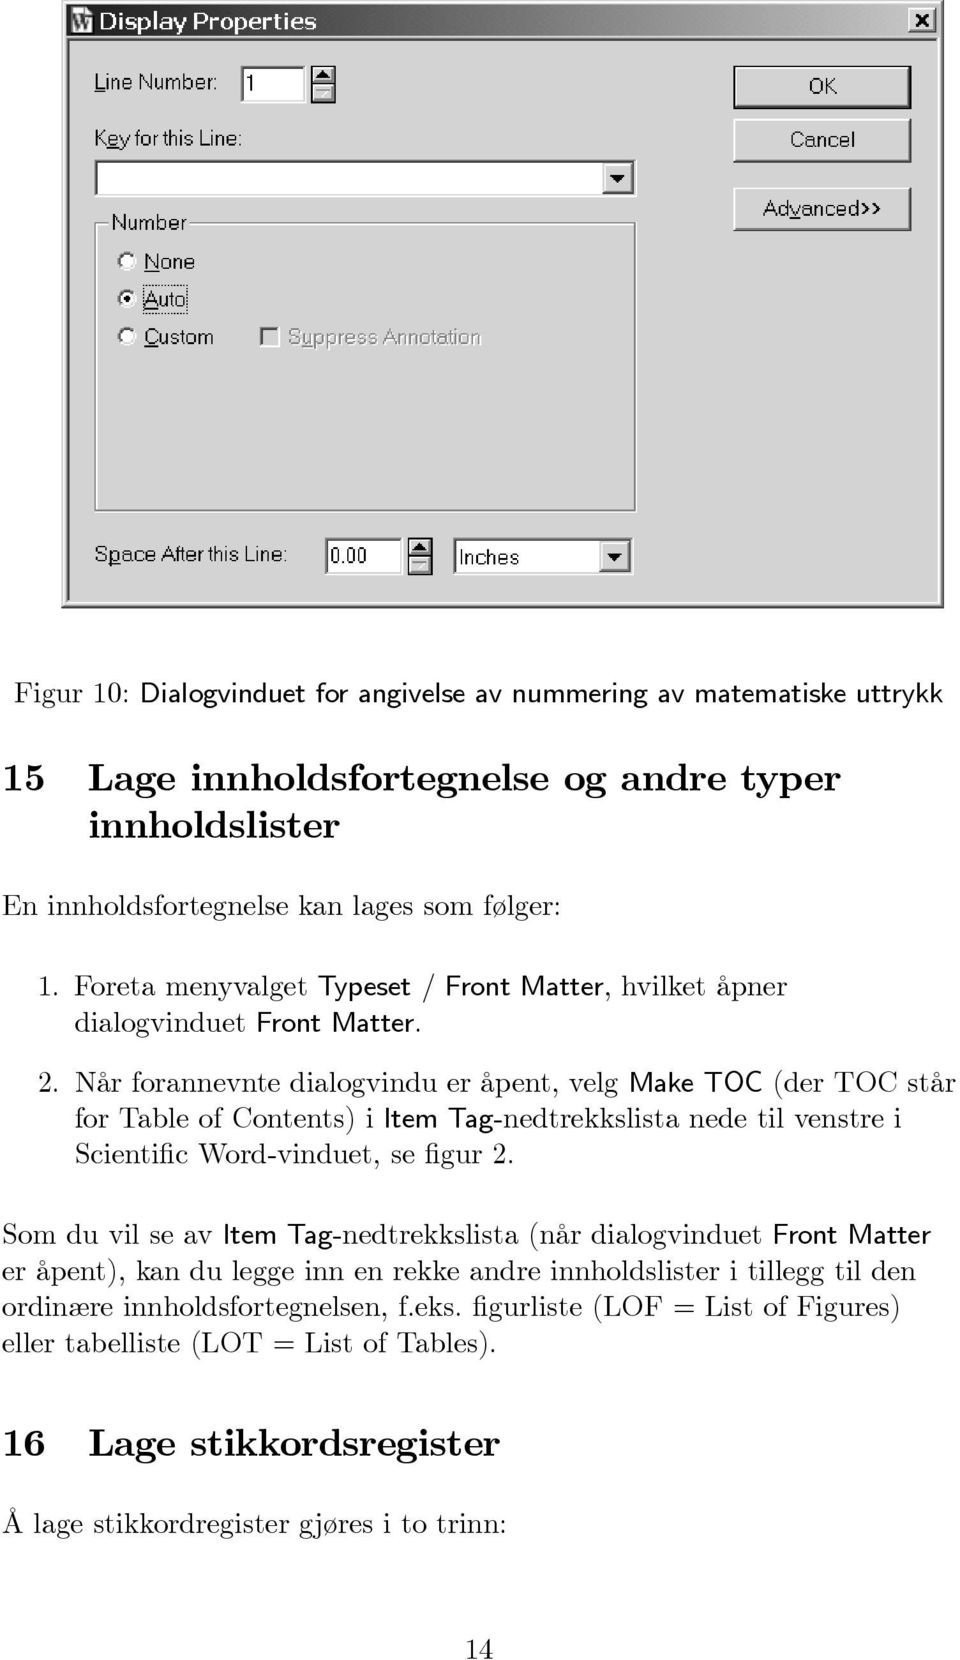 Når forannevnte dialogvindu er åpent, velg Make TOC (der TOC står for Table of Contents) i Item Tag-nedtrekkslista nede til venstre i Scientific Word-vinduet, se figur 2.